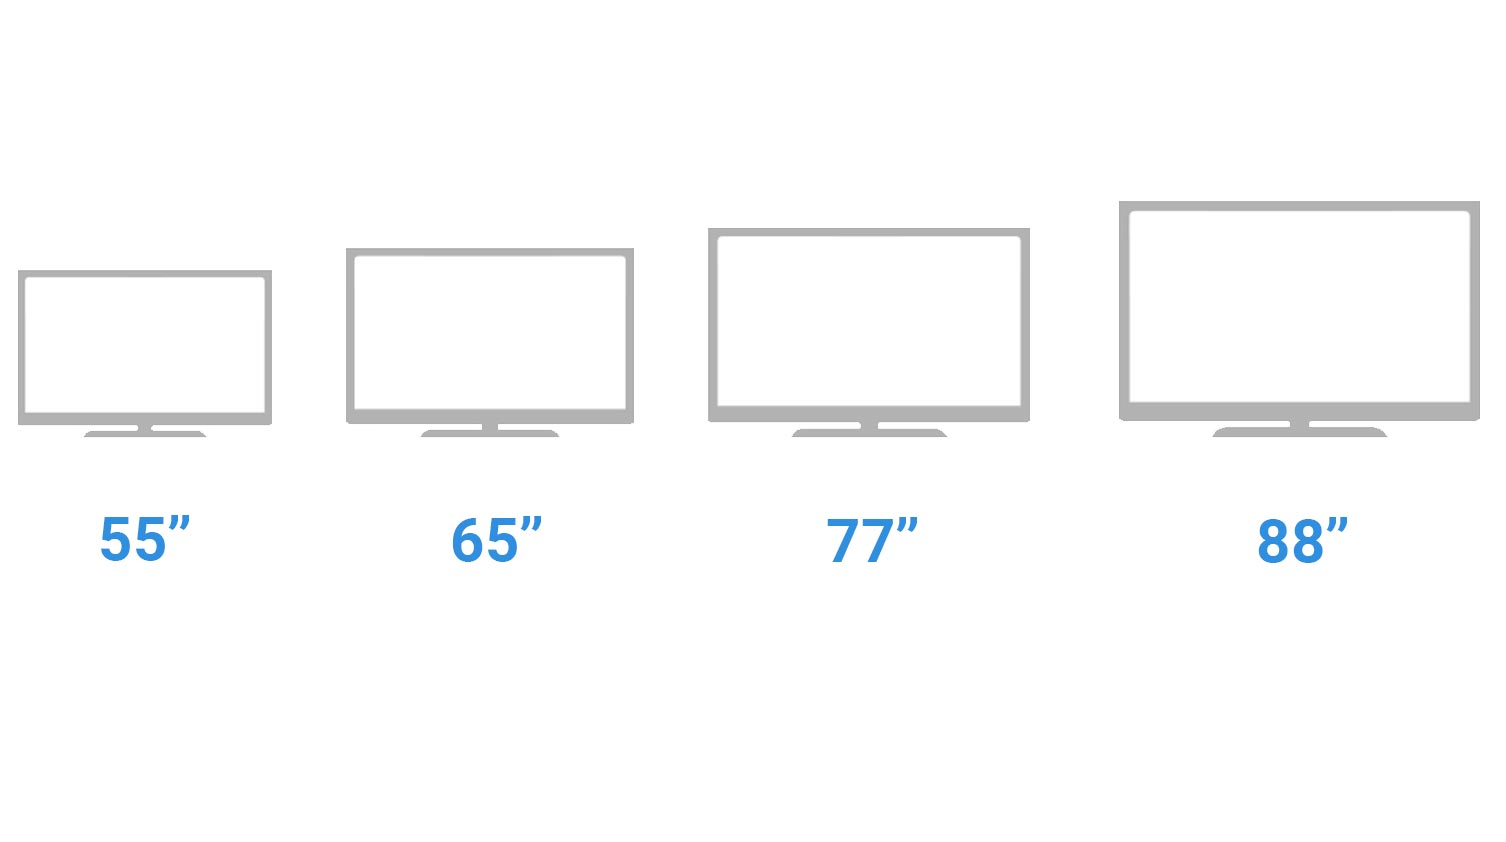 تلویزیون های اولد در سایز های 55 اینچ، 65 اینچ، 77 اینچ و 88 اینچ تولید می شوند